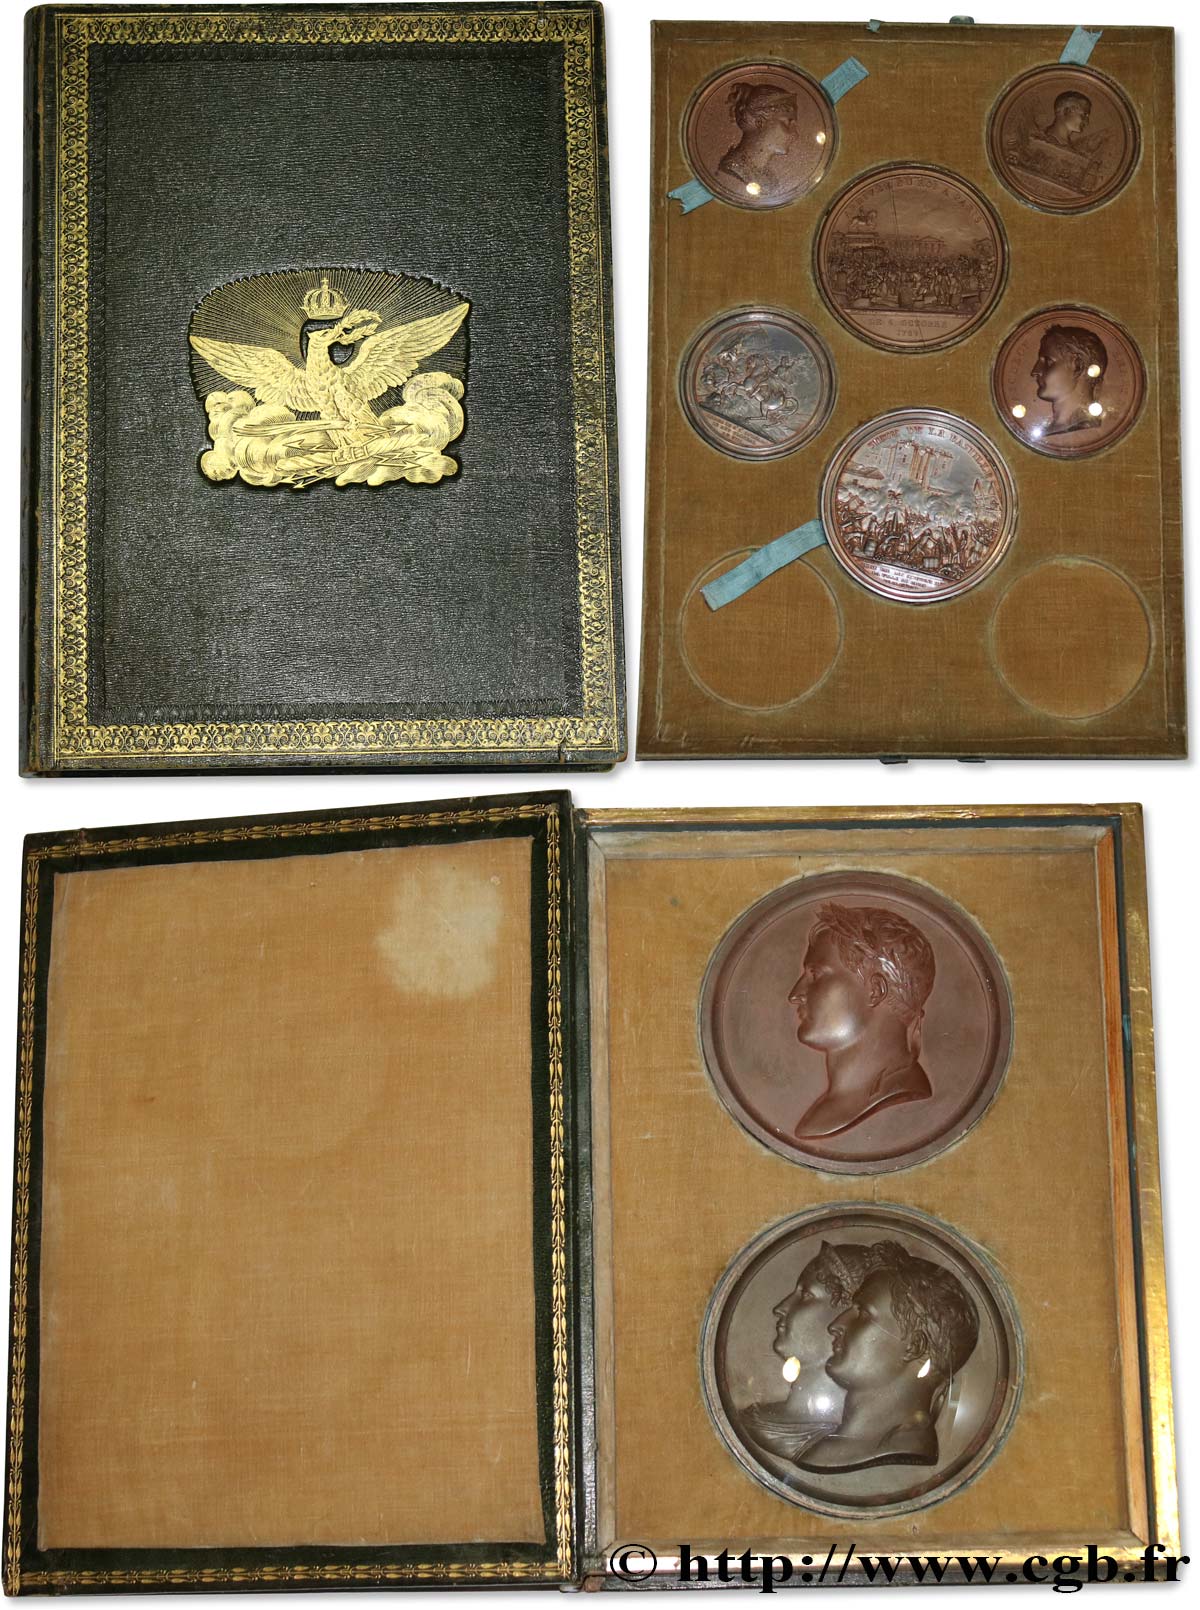 NAPOLEON S EMPIRE Coffret Révolution et Napoléon Ier contenant des tirages en étain bronzé AU